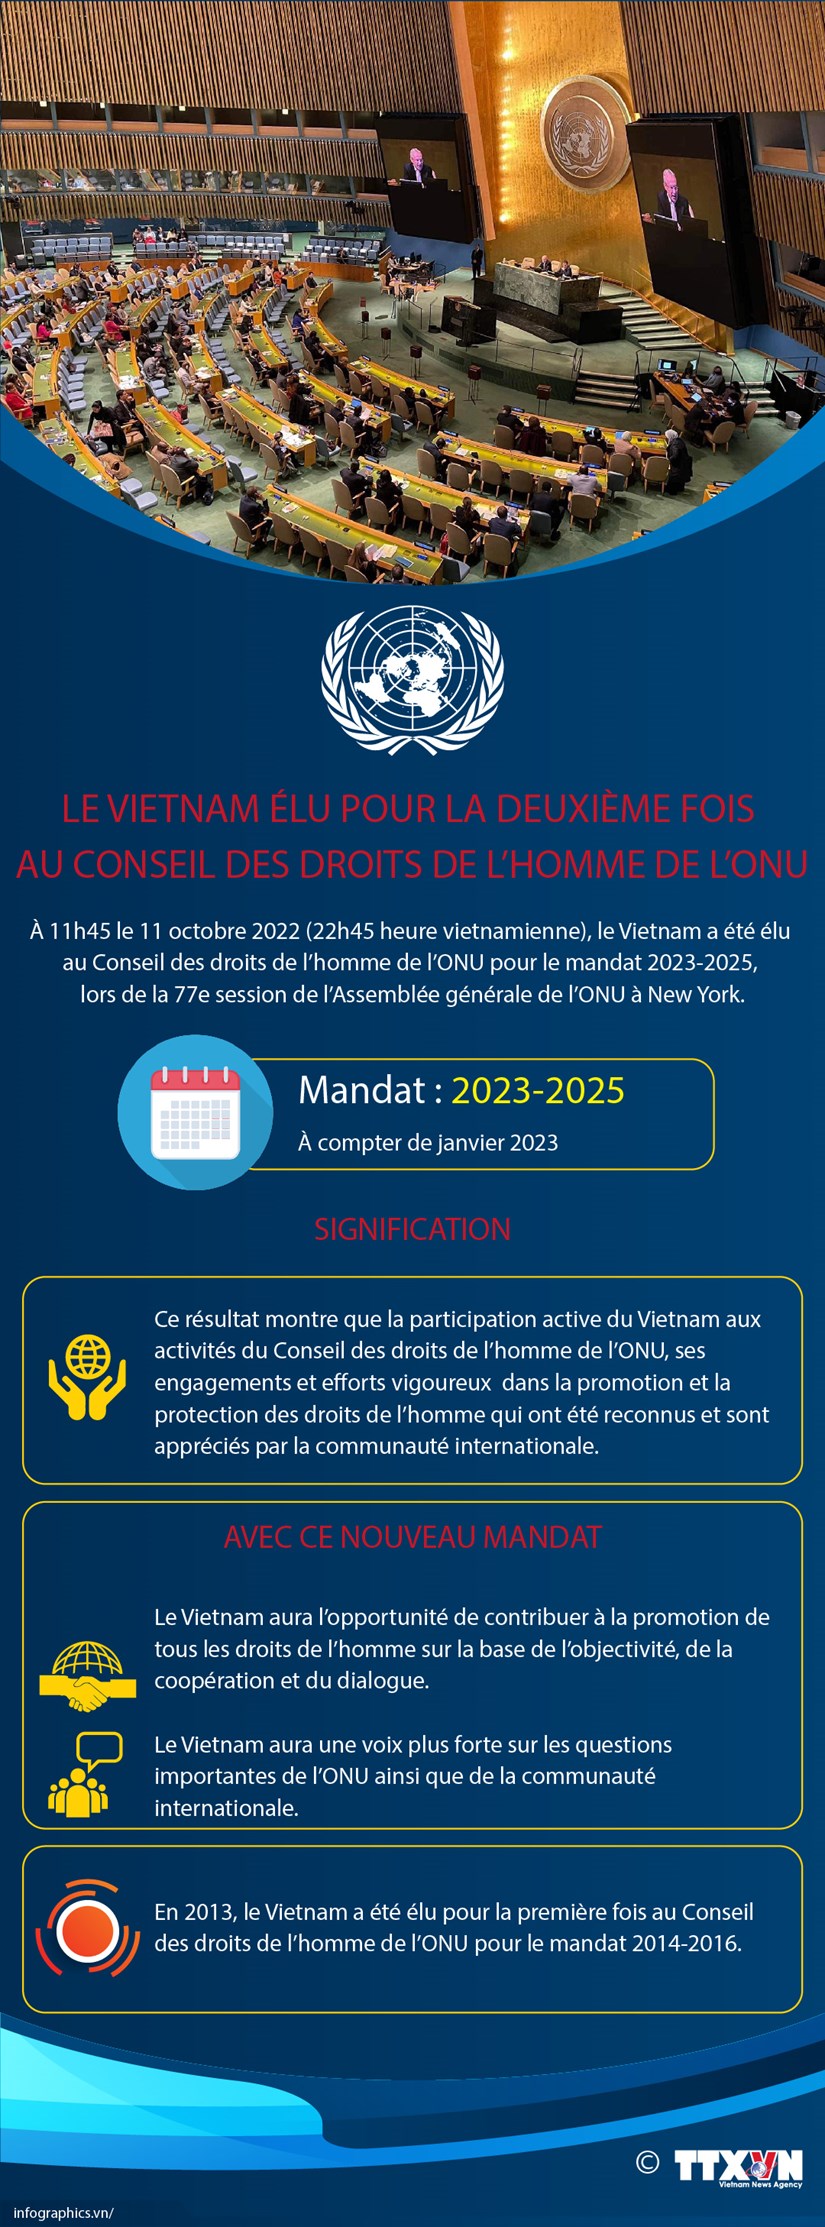 Le Vietnam elu pour la deuxieme fois au Conseil des droits de l'homme de l'ONU hinh anh 1